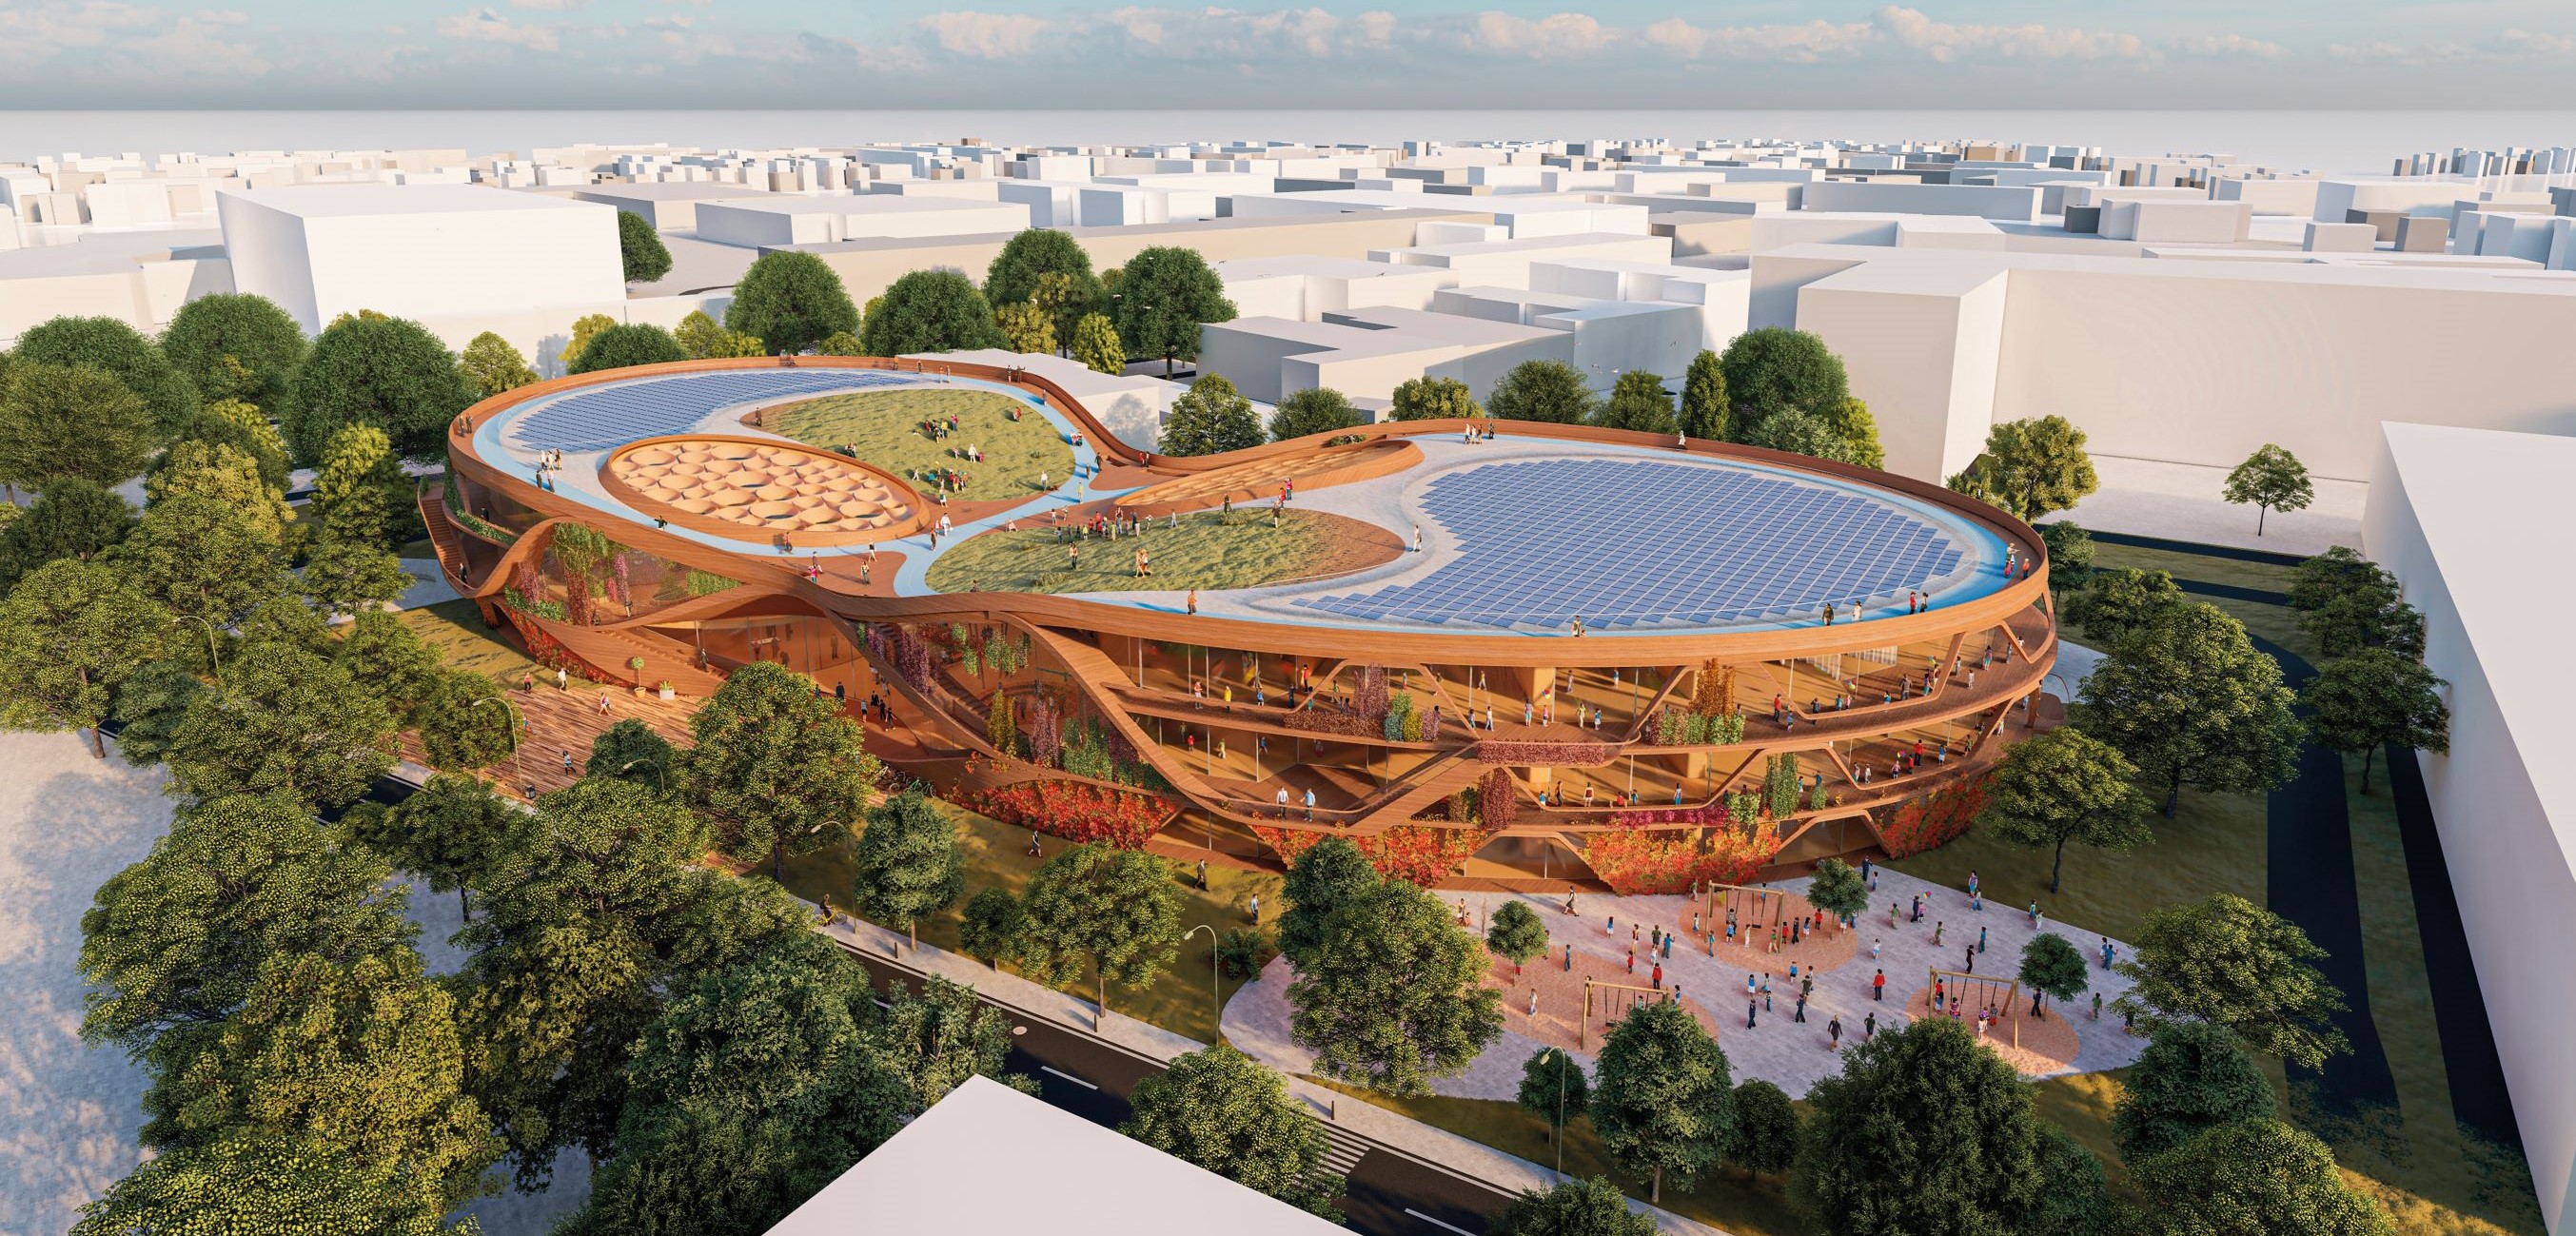 未來系環保建築 - 自給自足綠色校園